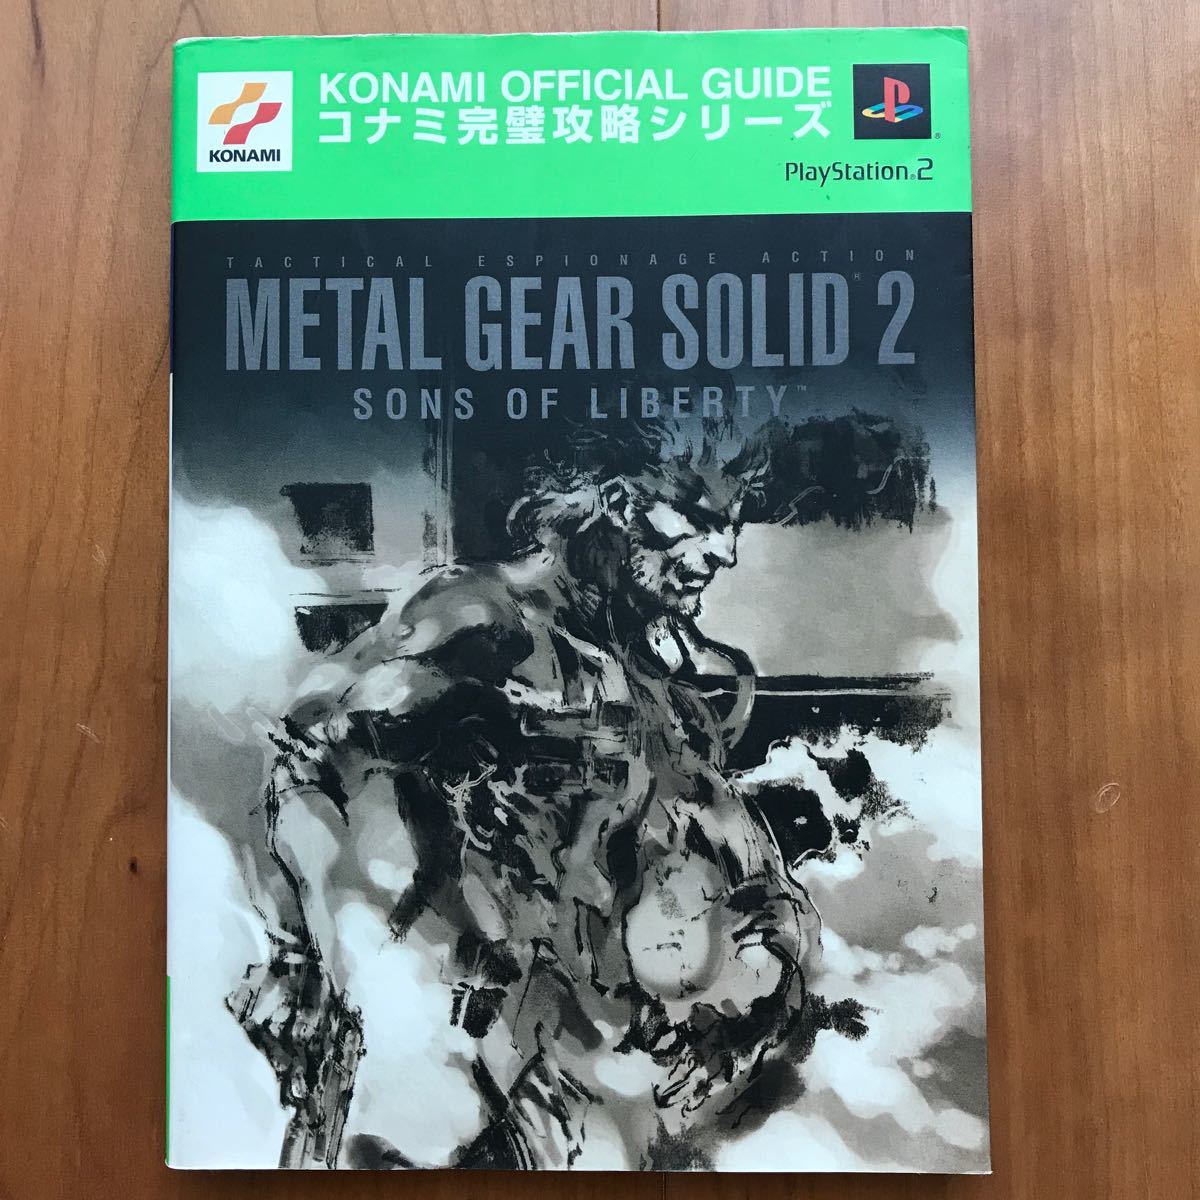 コナミ完璧攻略シリーズ【PS2】公式ガイドブック〈メタルギアソリッド2 サンズオブリバティ〉MetalGearSolid2 双葉社